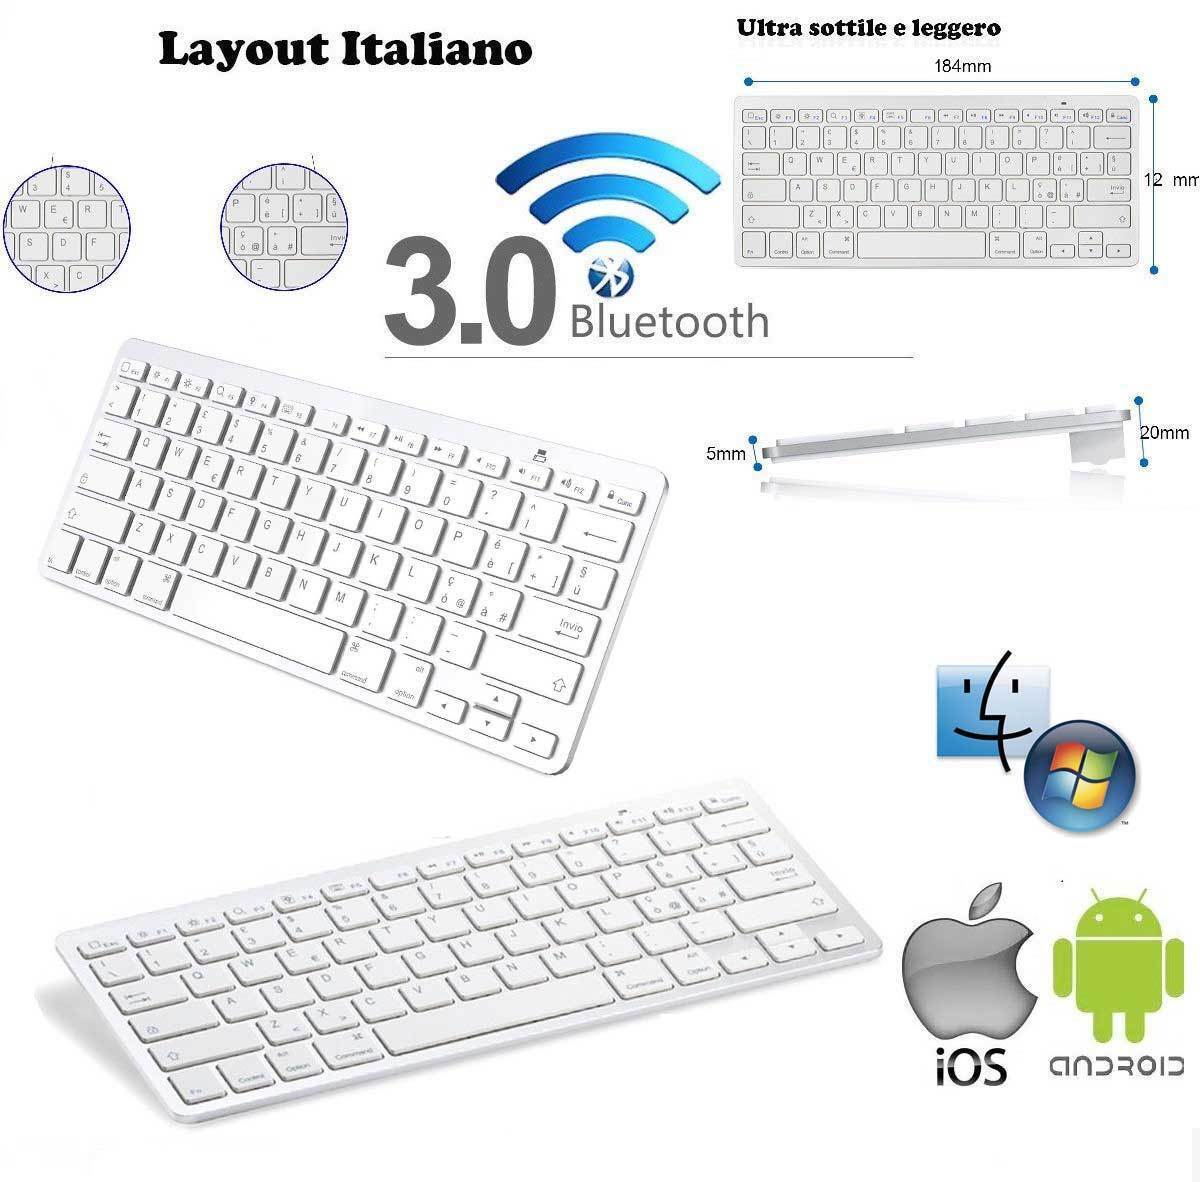 Tastiera Wireless Bluetooth Keyboard Slim per Apple iMac Macbook iPhone iPad ITA